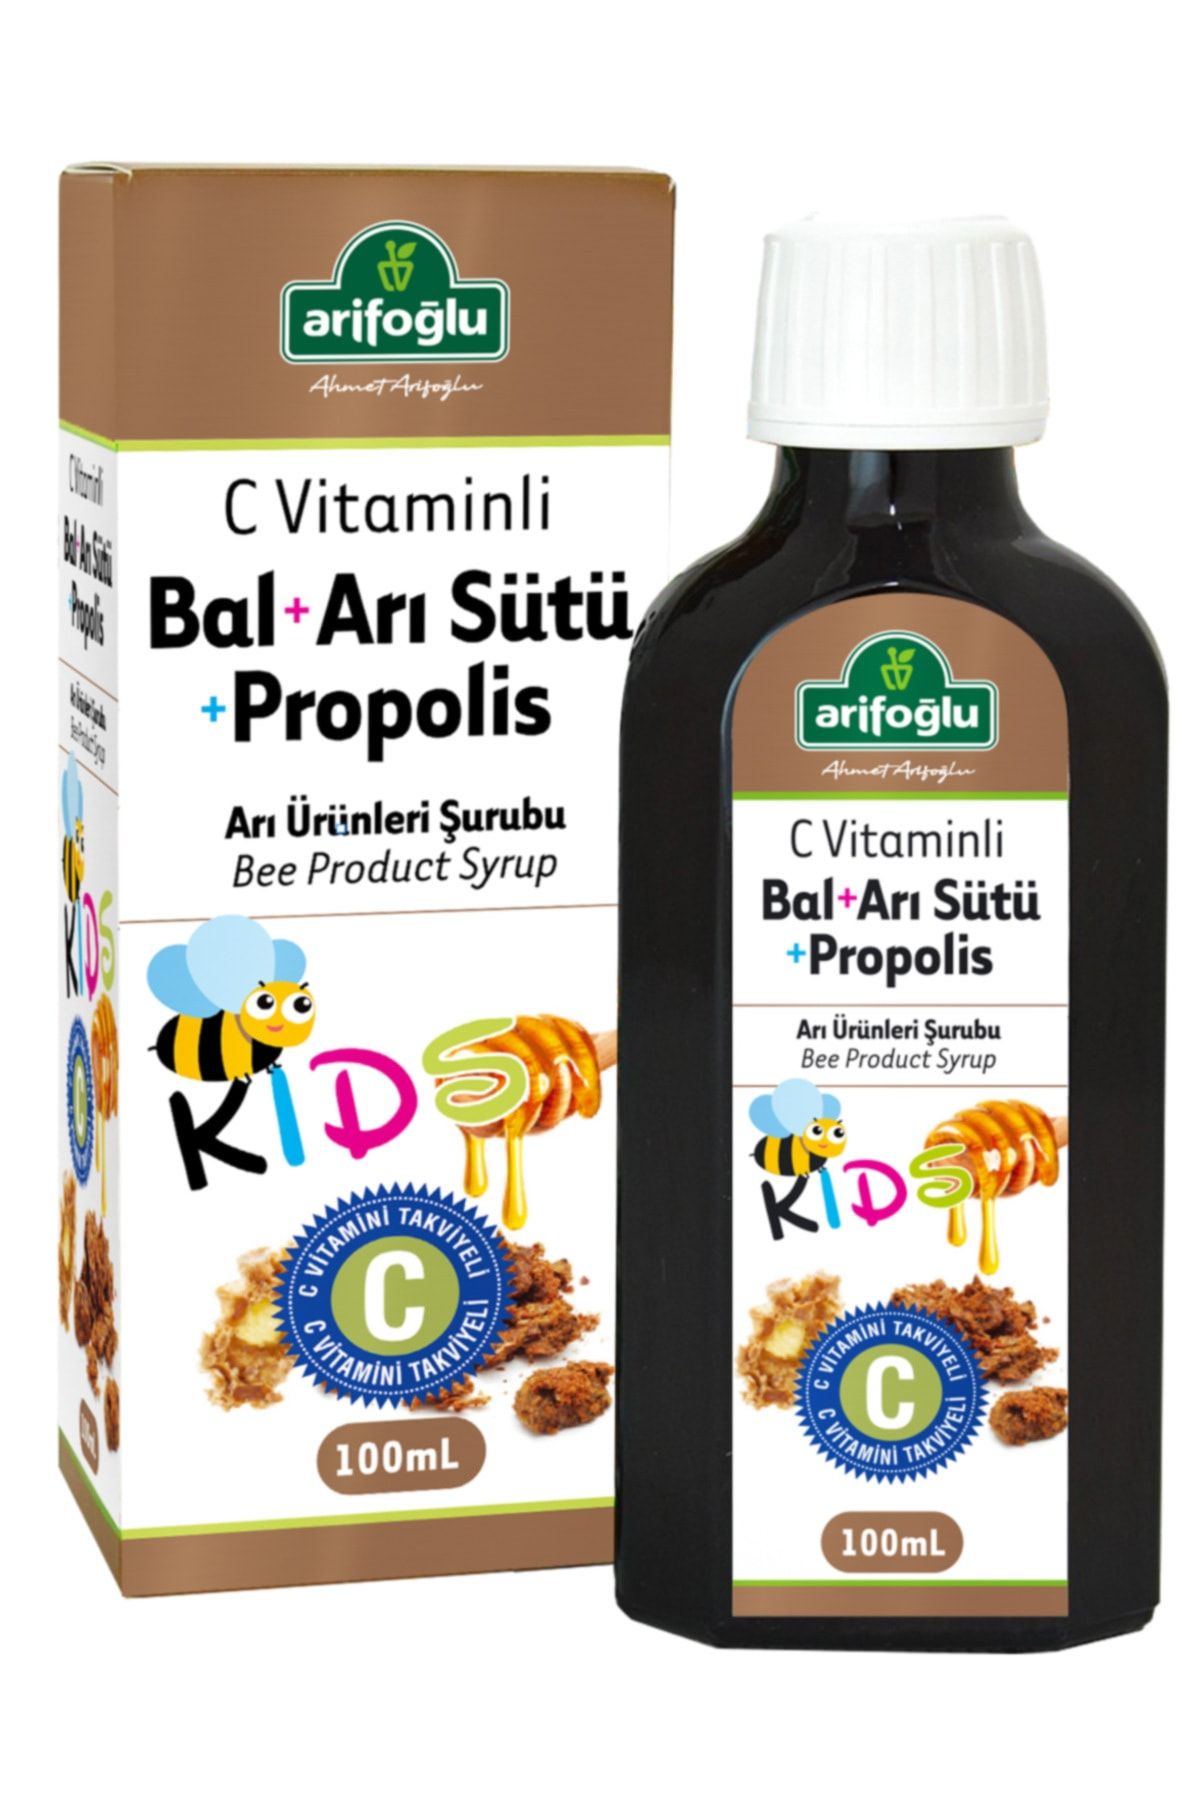 Arifoğlu Bal + Arı Sütü + Propolis for Kids